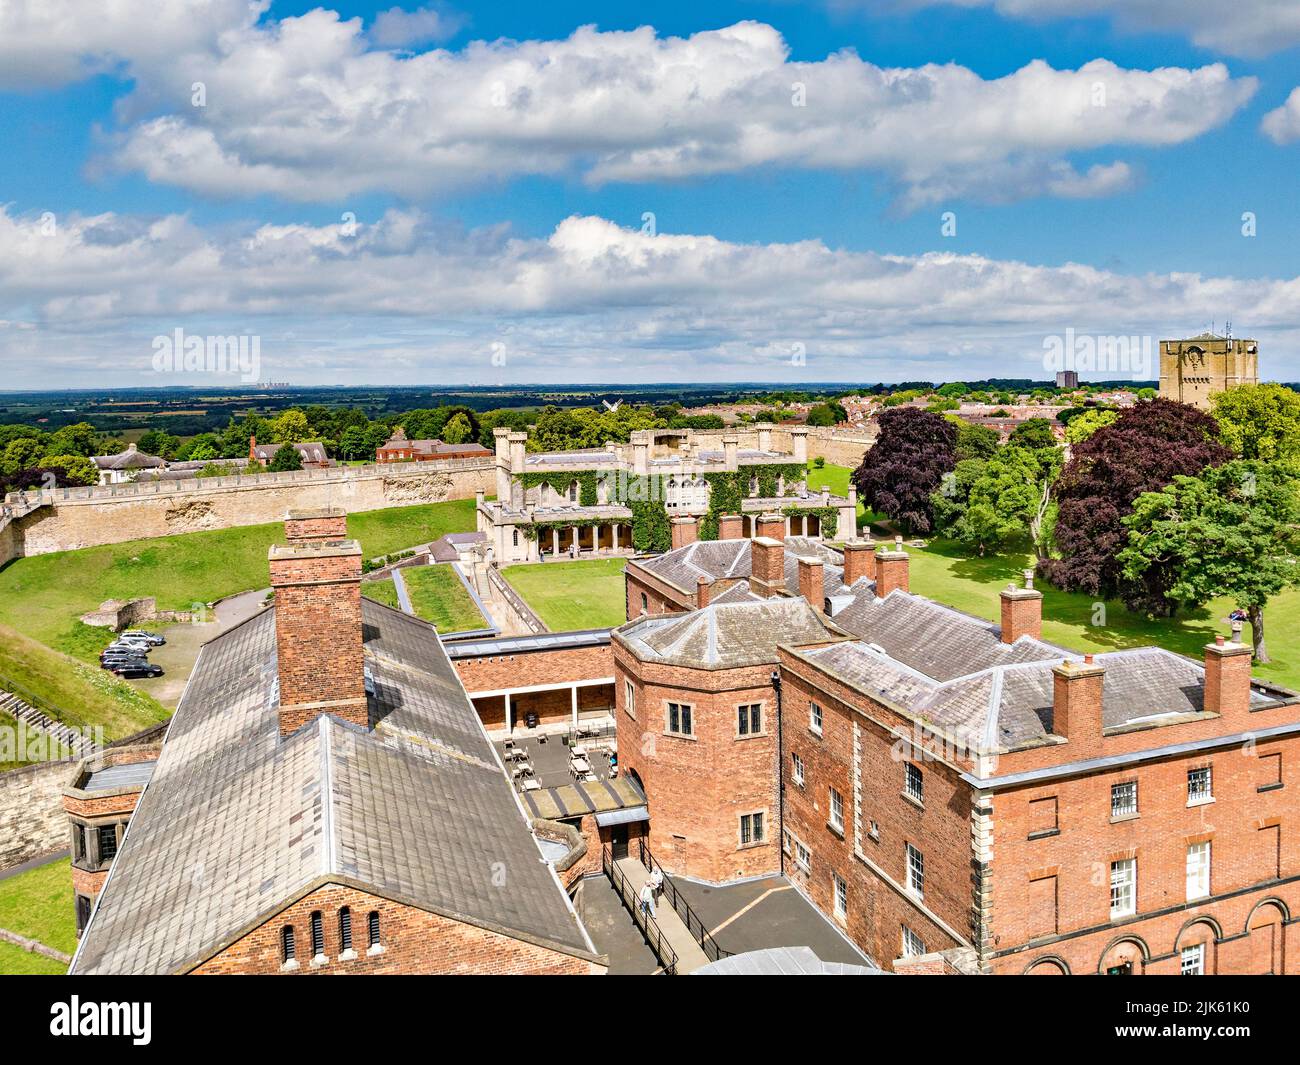 2 de julio de 2019: Lincoln, Reino Unido - Una vista de la antigua cárcel desde las murallas del castillo, con el edificio del Tribunal de la Corona, y una vista distante de los Wolds de Lincoln. Foto de stock